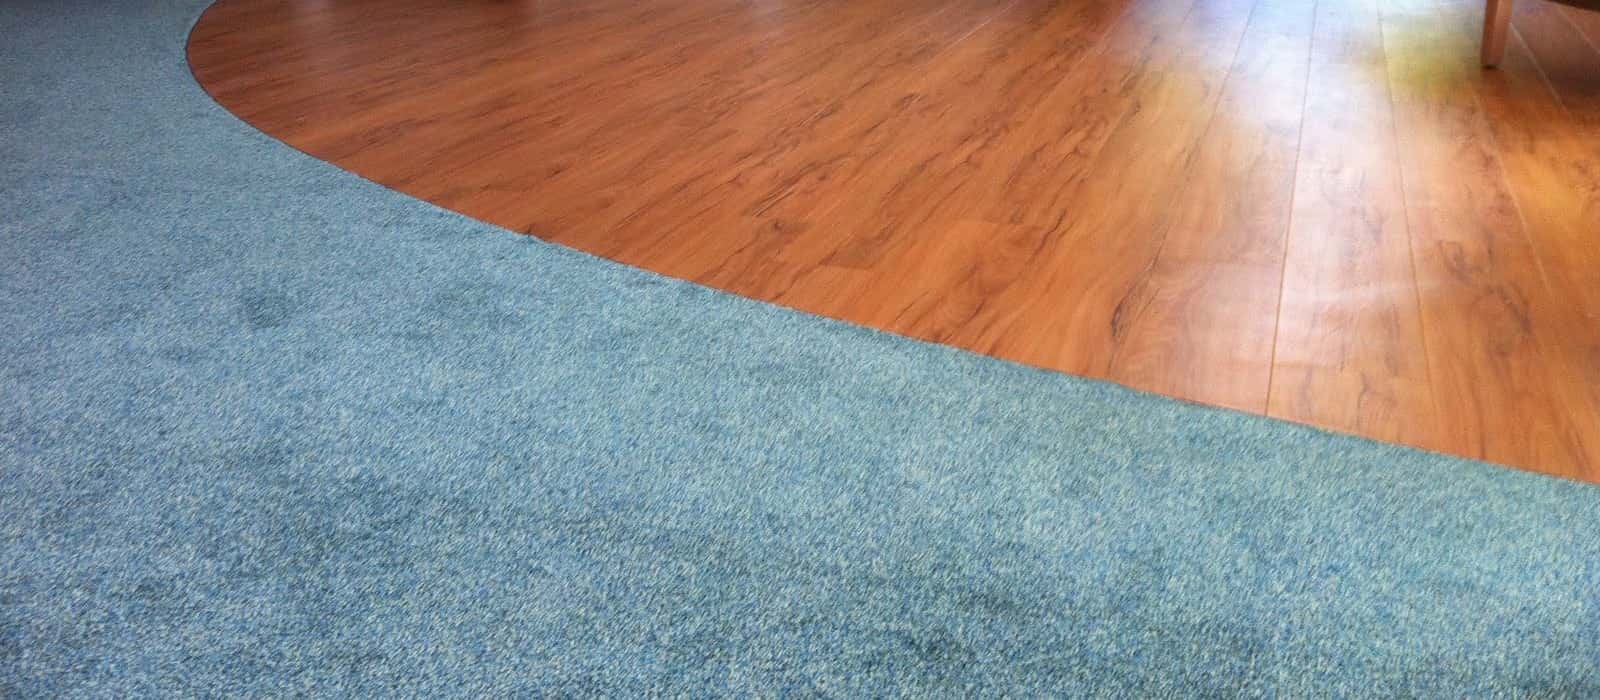 Care Home carpets